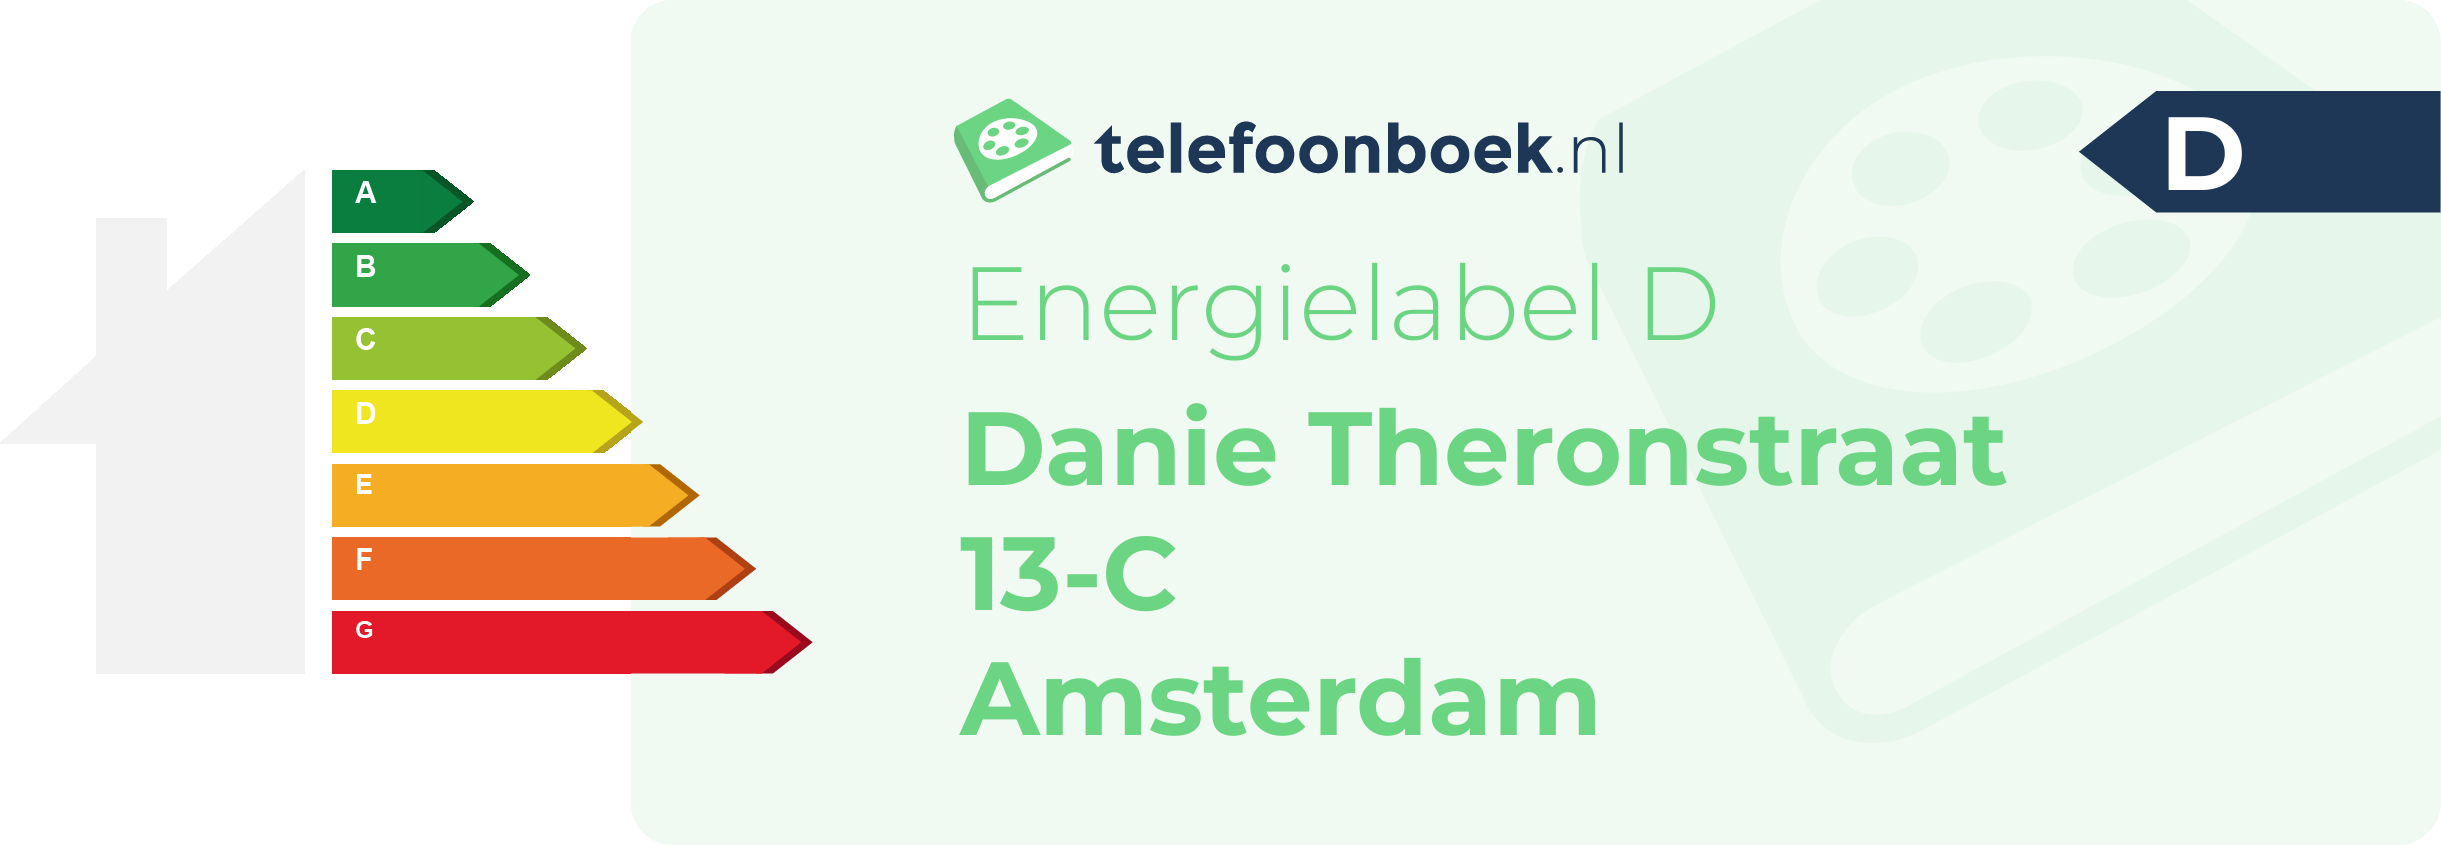 Energielabel Danie Theronstraat 13-C Amsterdam